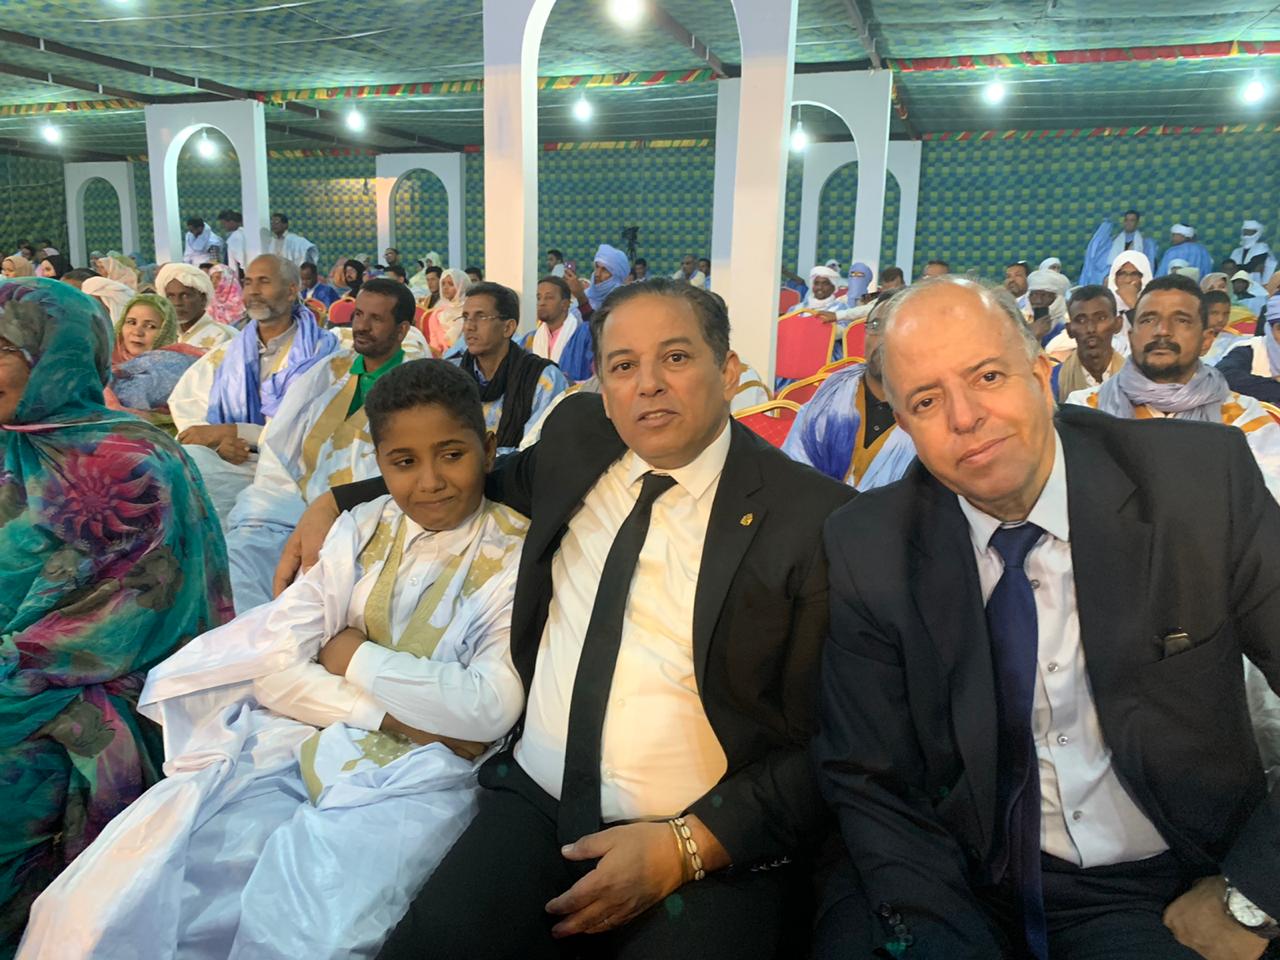 القائم بالأعمال في السفارة المغربية بنواكشوط في حفل اختتام مهرجان شنقيط 